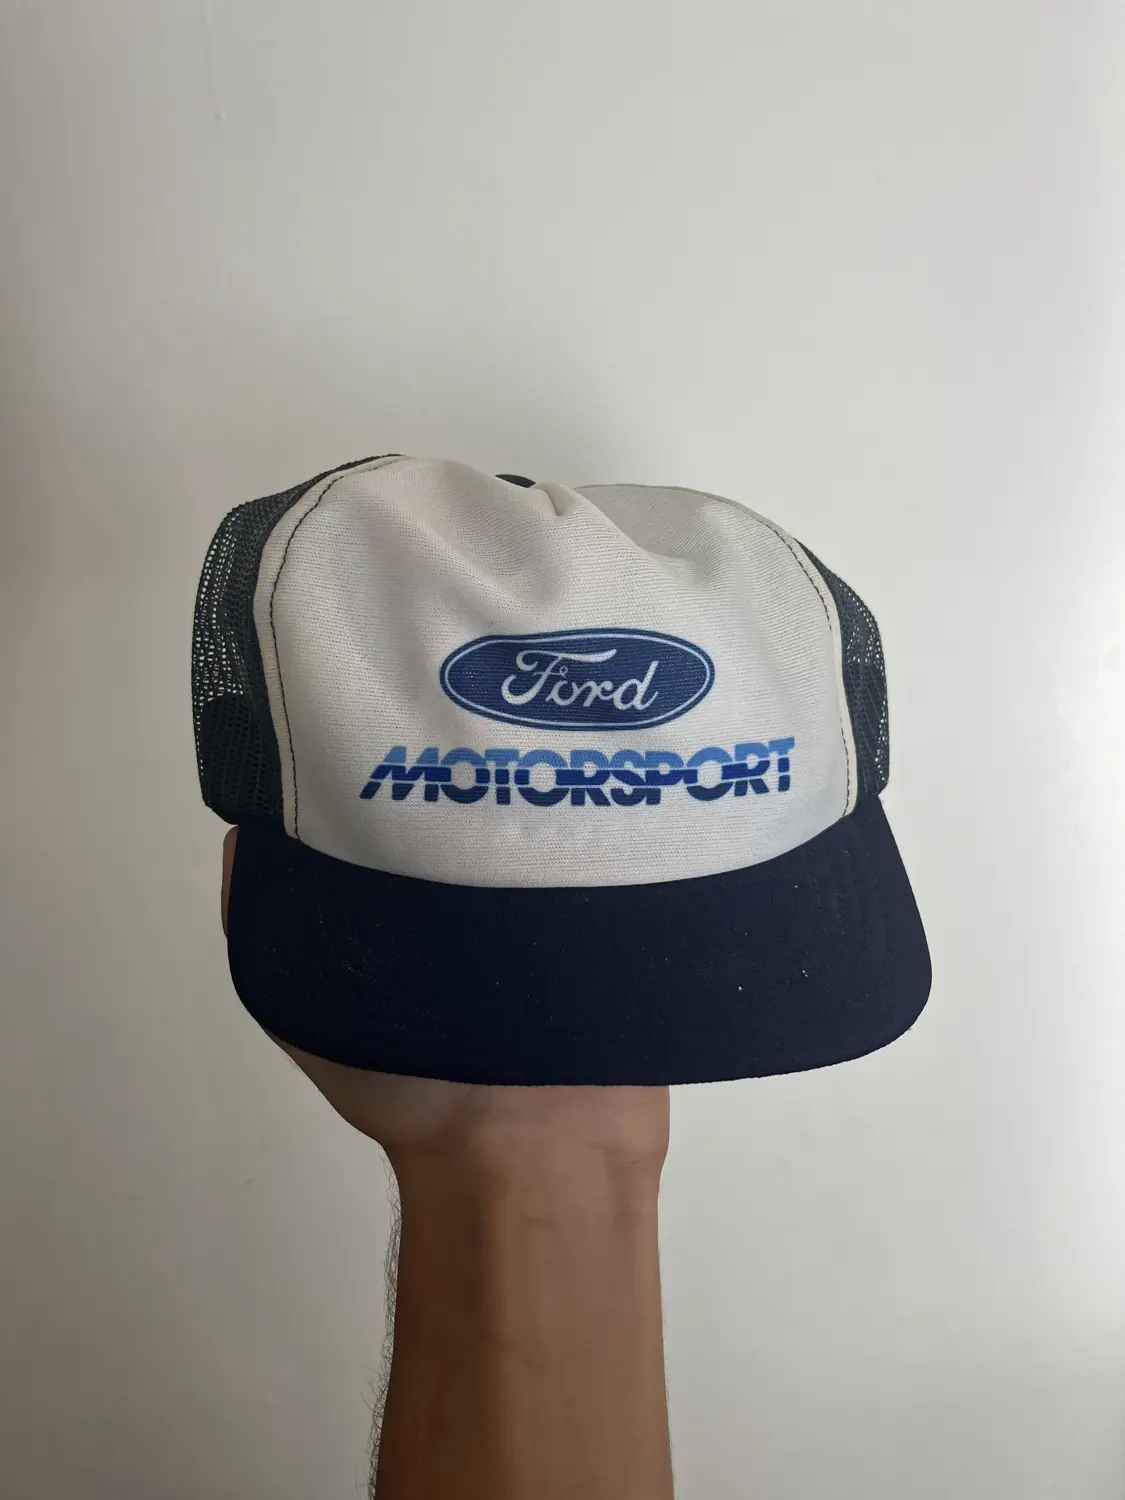 Ford Motorsport hat